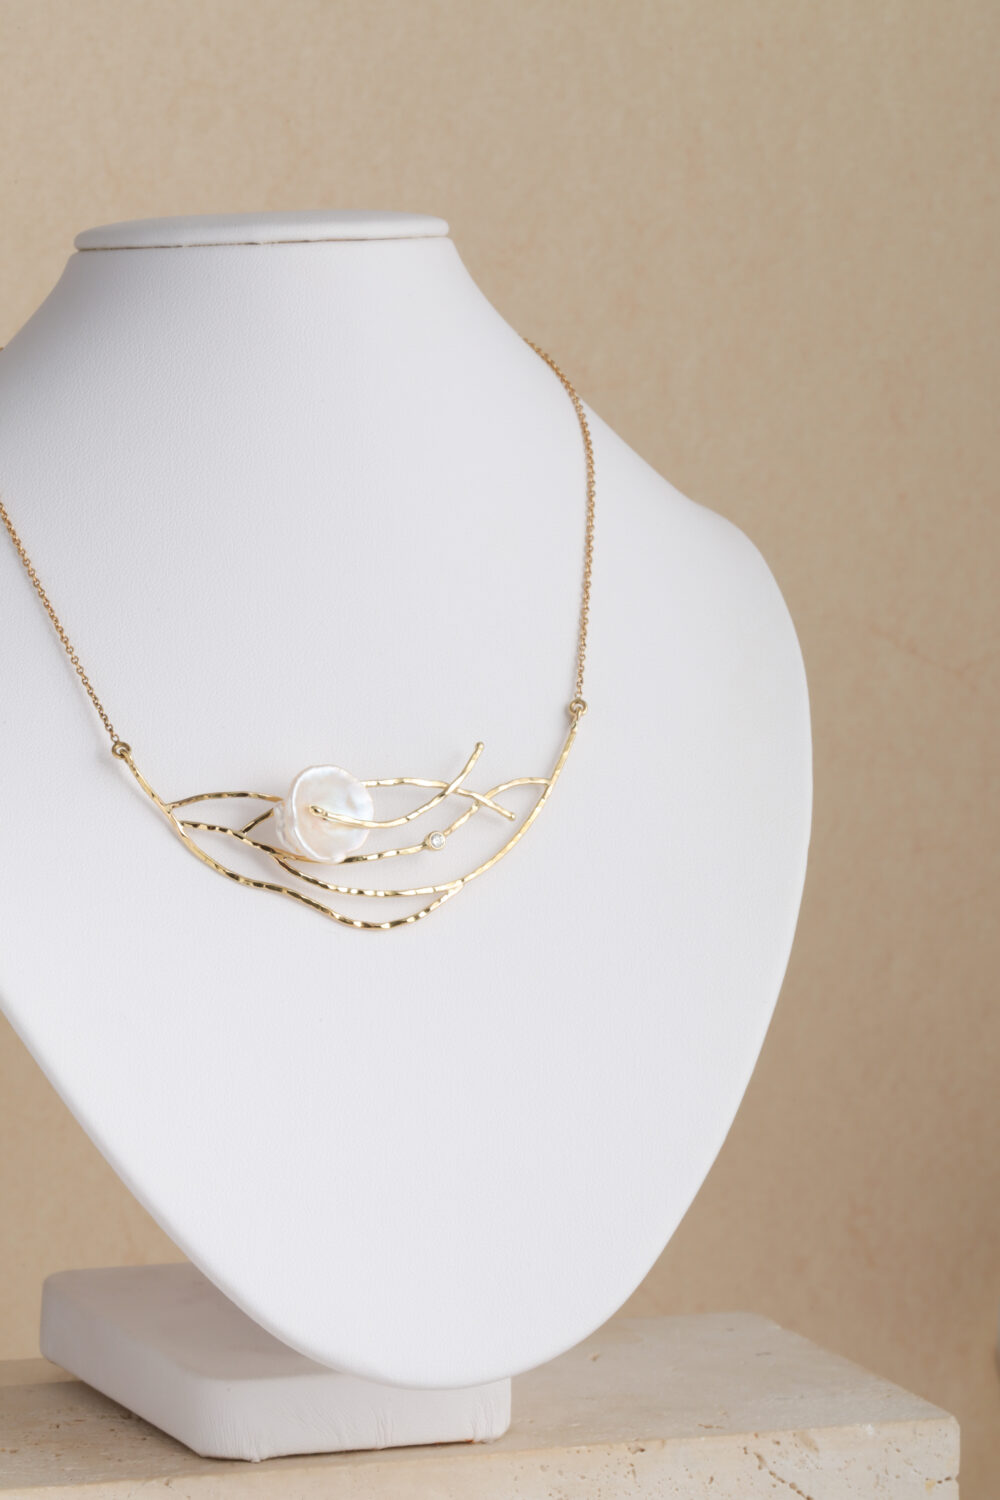 Halsketting vervaardigd uit 18-karaats goud bezet met een briljant geslepen diamant en een barokke, natuurlijke parel. Al onze sieraden worden met de hand gemaakt in ons atelier in Antwerpen.